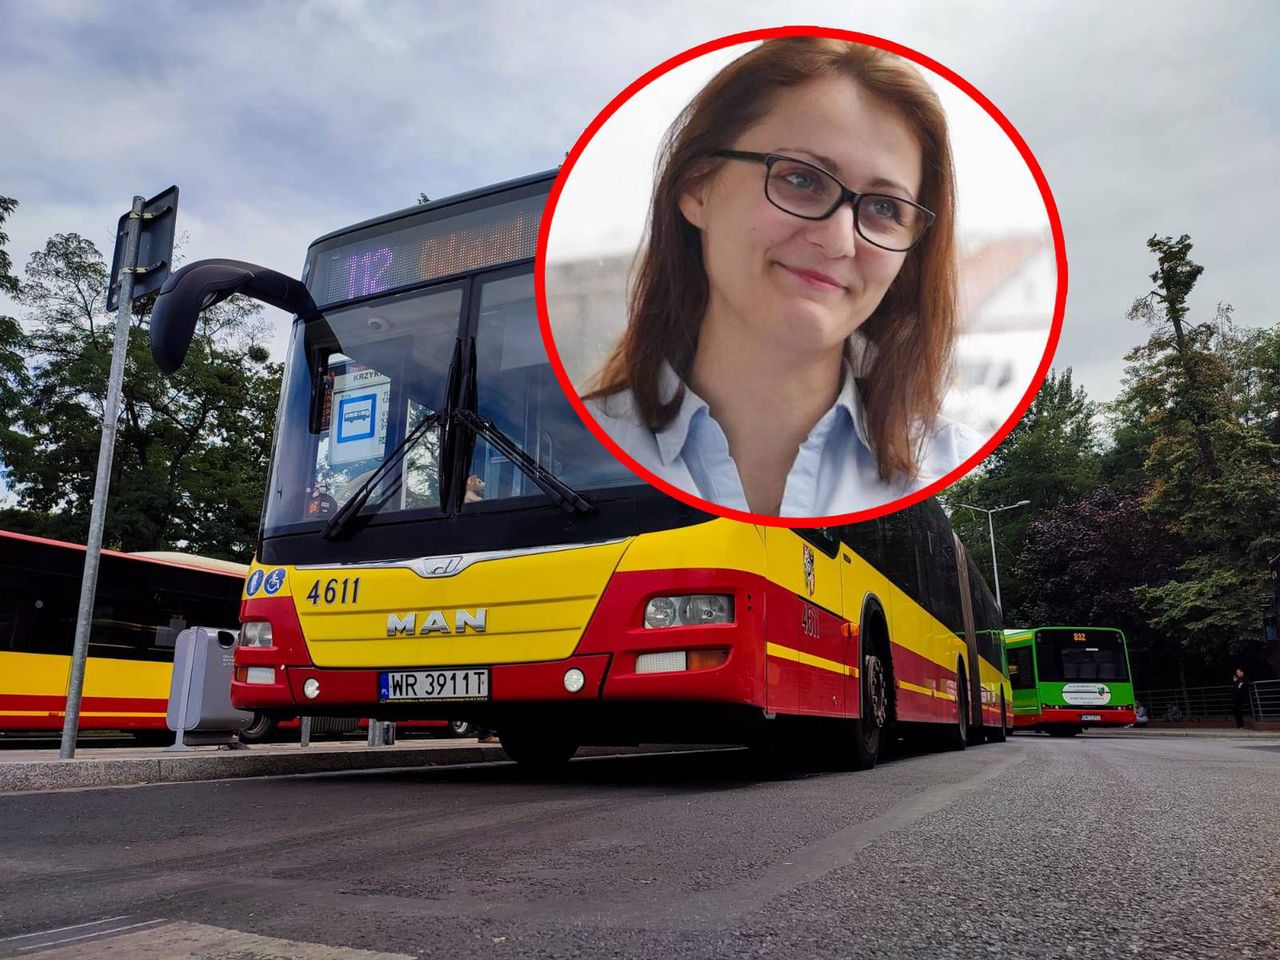 Mama za kółkiem autobusu: Coraz więcej ludzi wyładowuje się na kierowcach